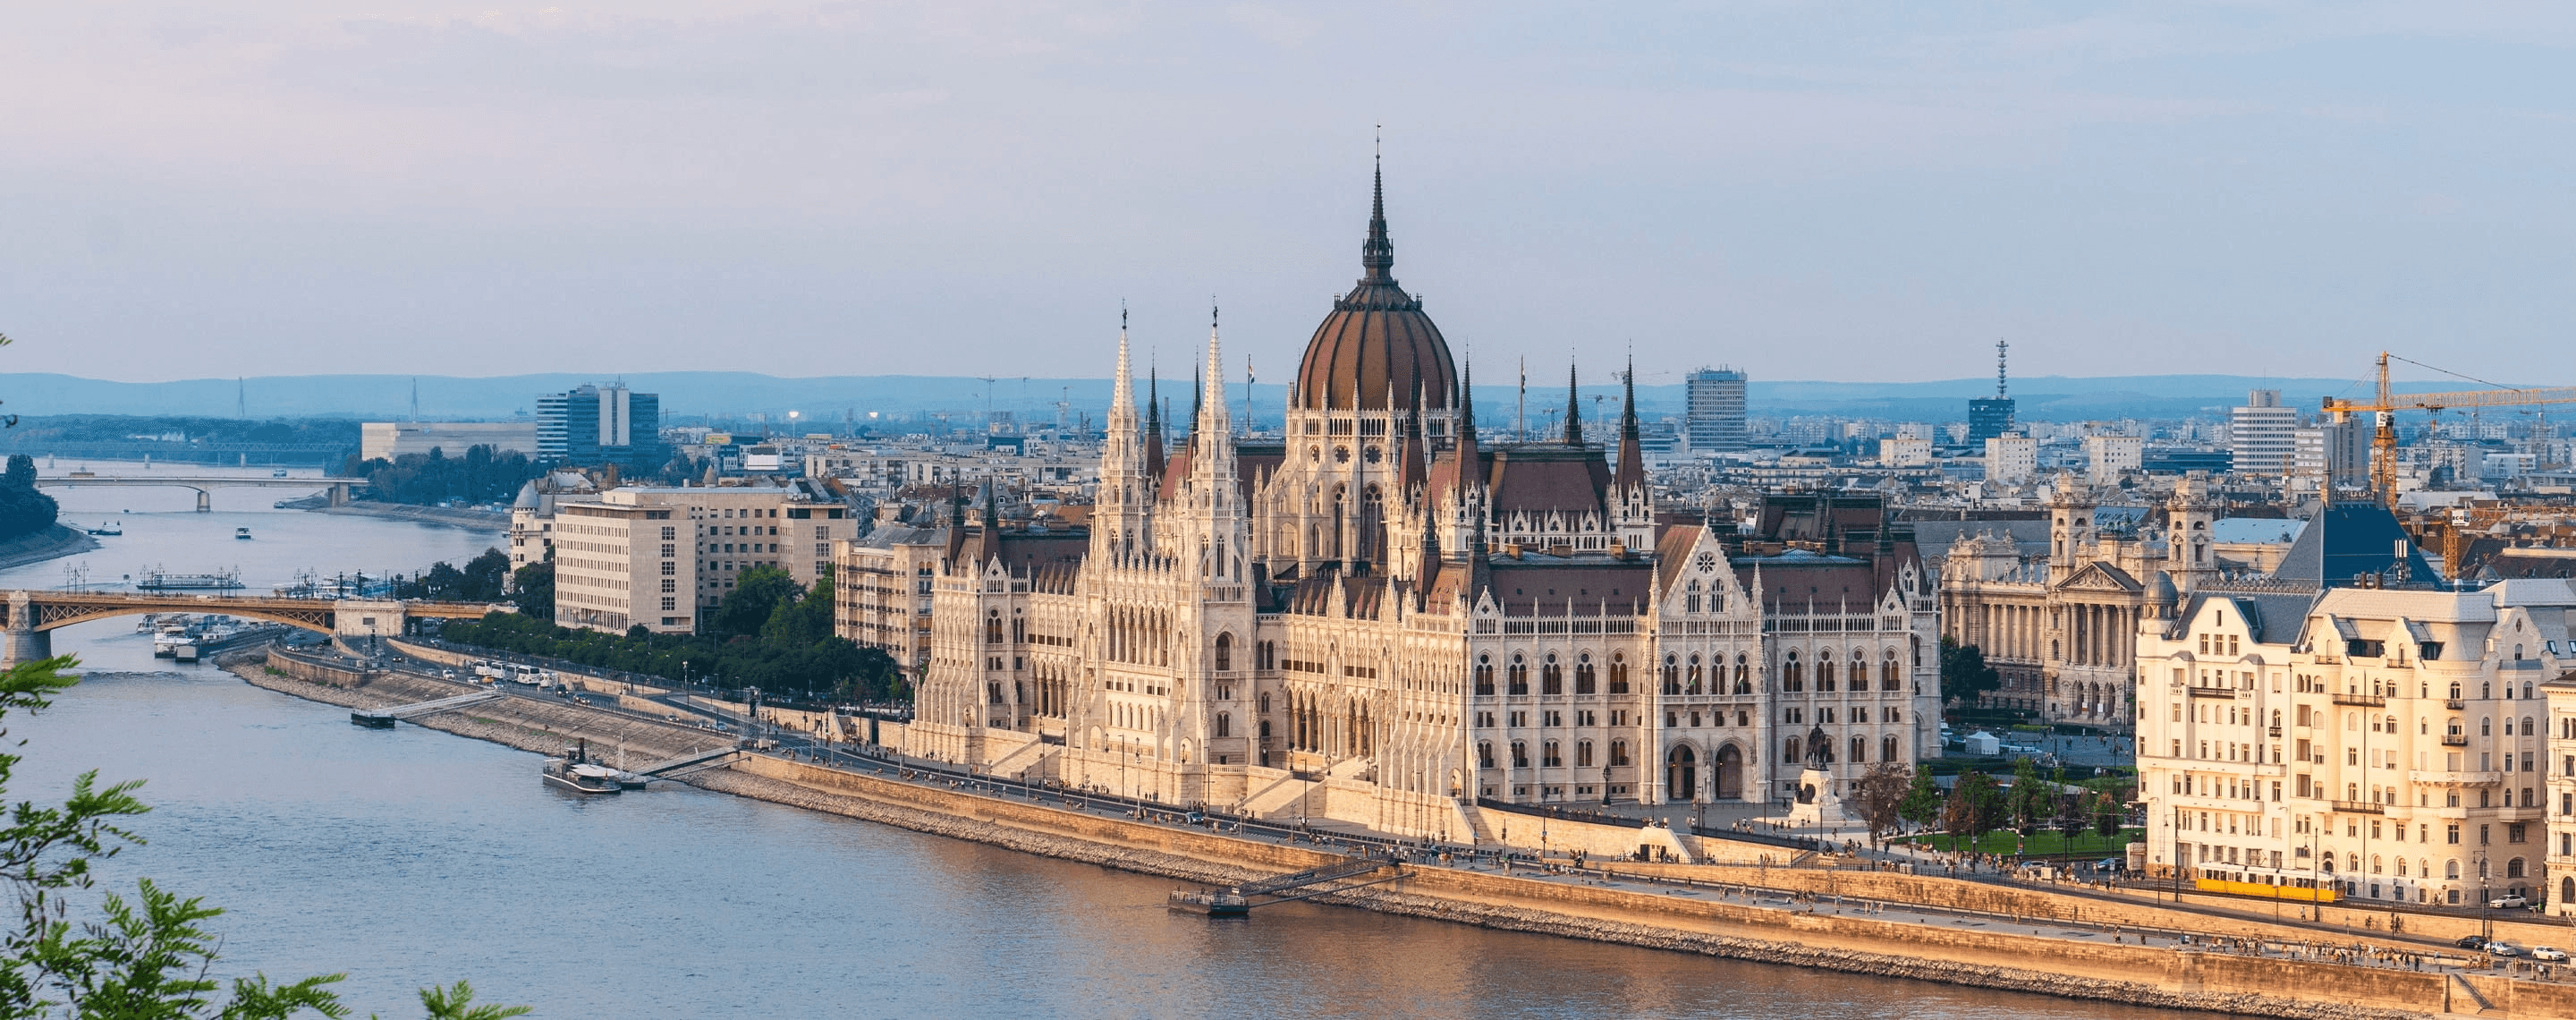 Blick auf das Parlamentsgebäude in Budapest, Ungarn